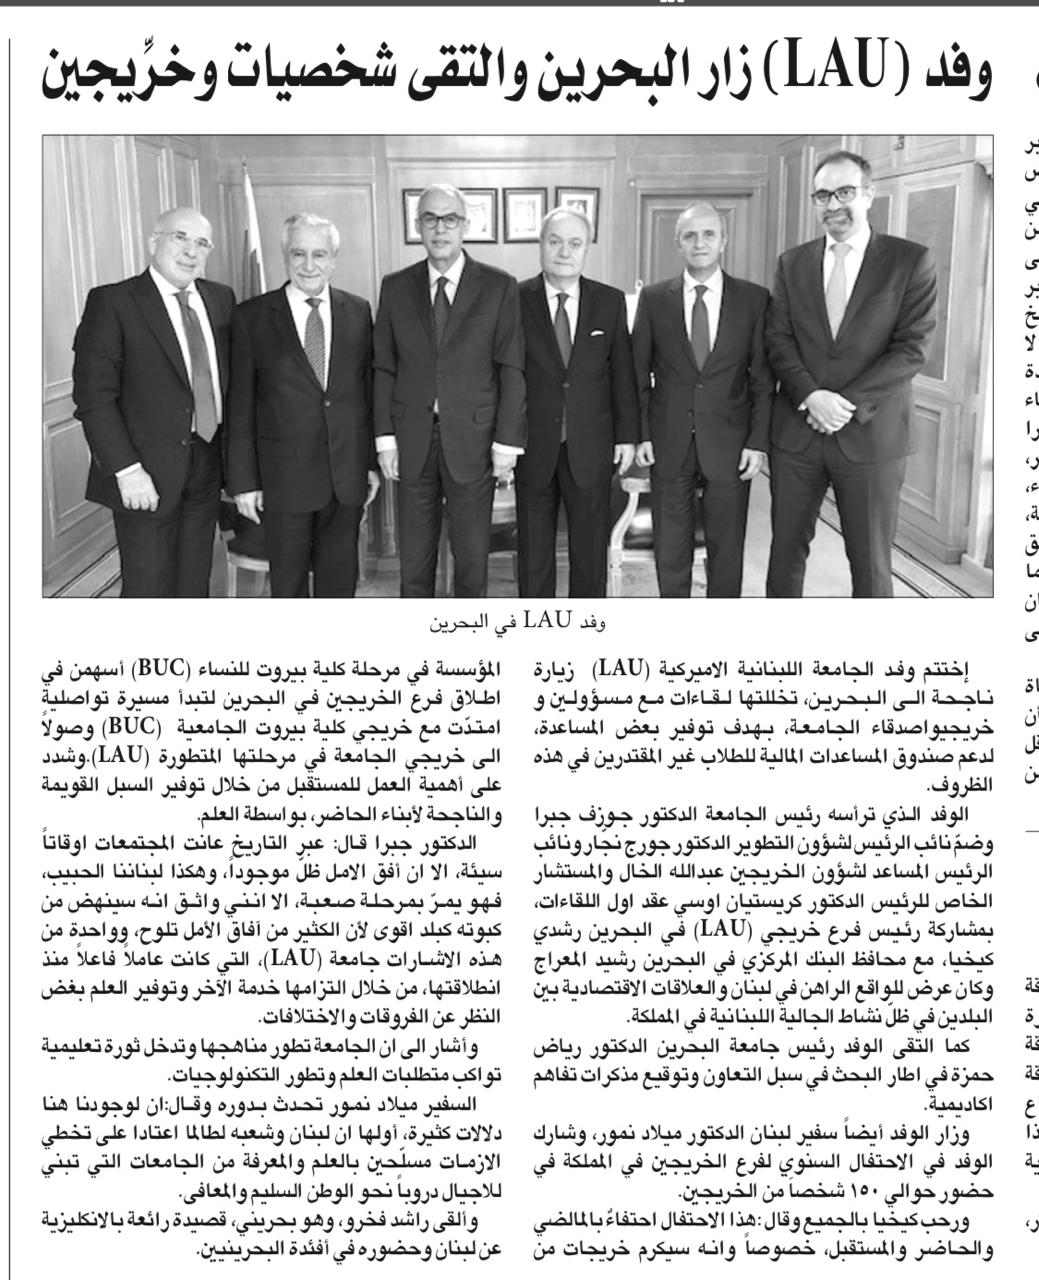 Al - Liwaa Newspaper (29-11-2019).jpg